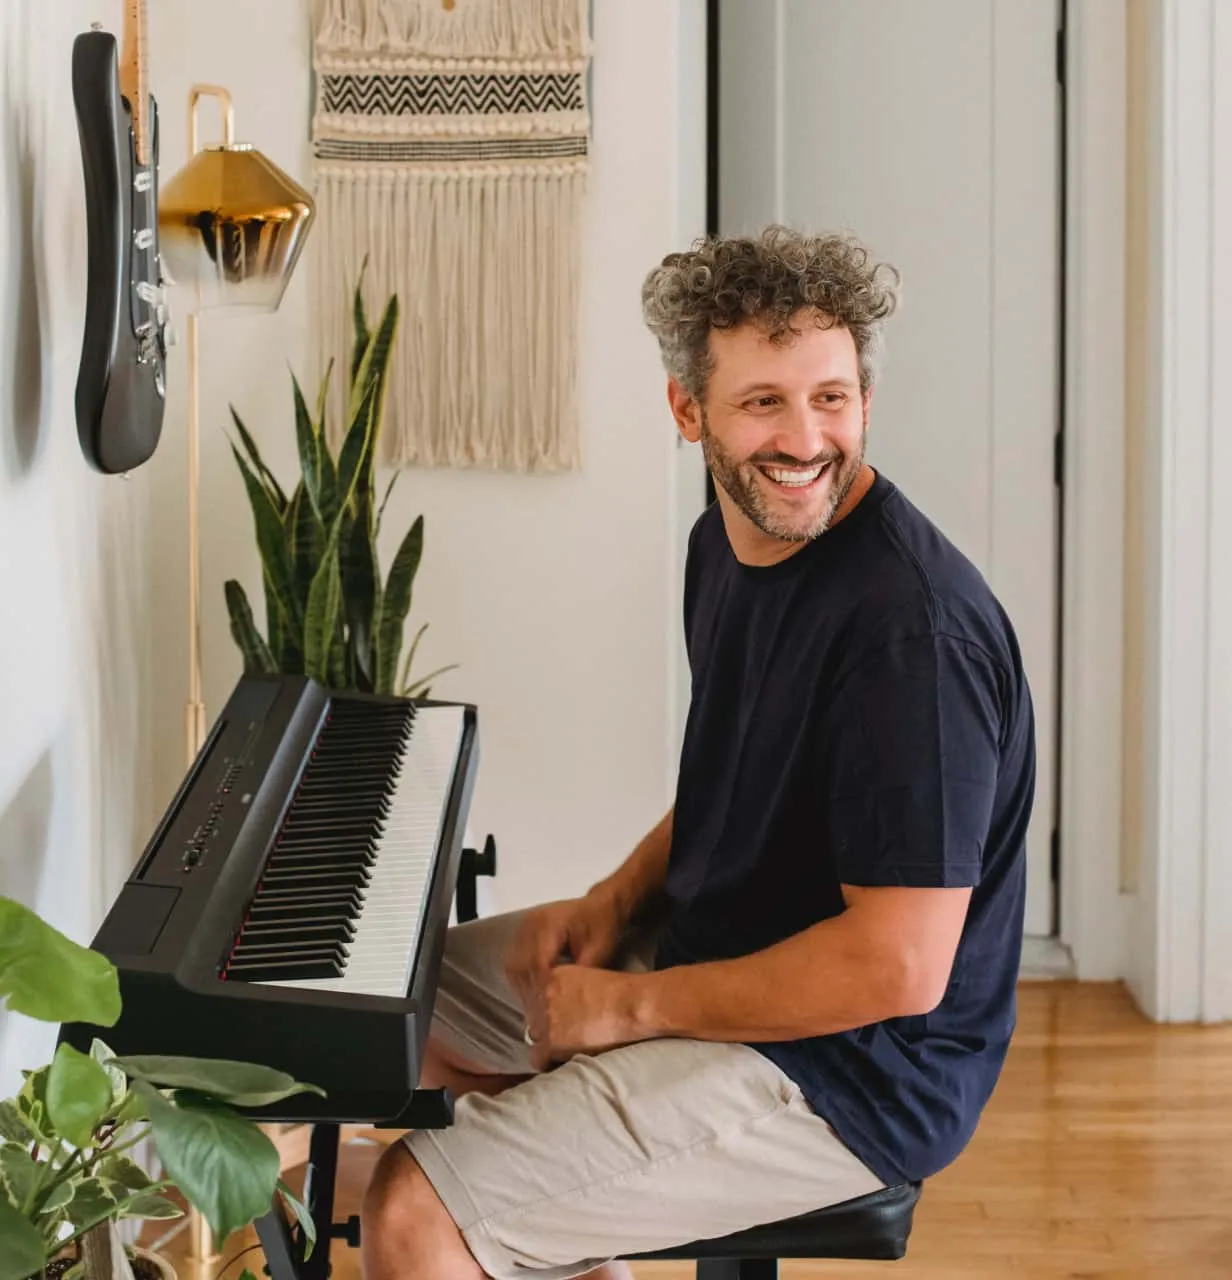 Mann sitzt an E-Piano und guckt lachend über seine Schulter